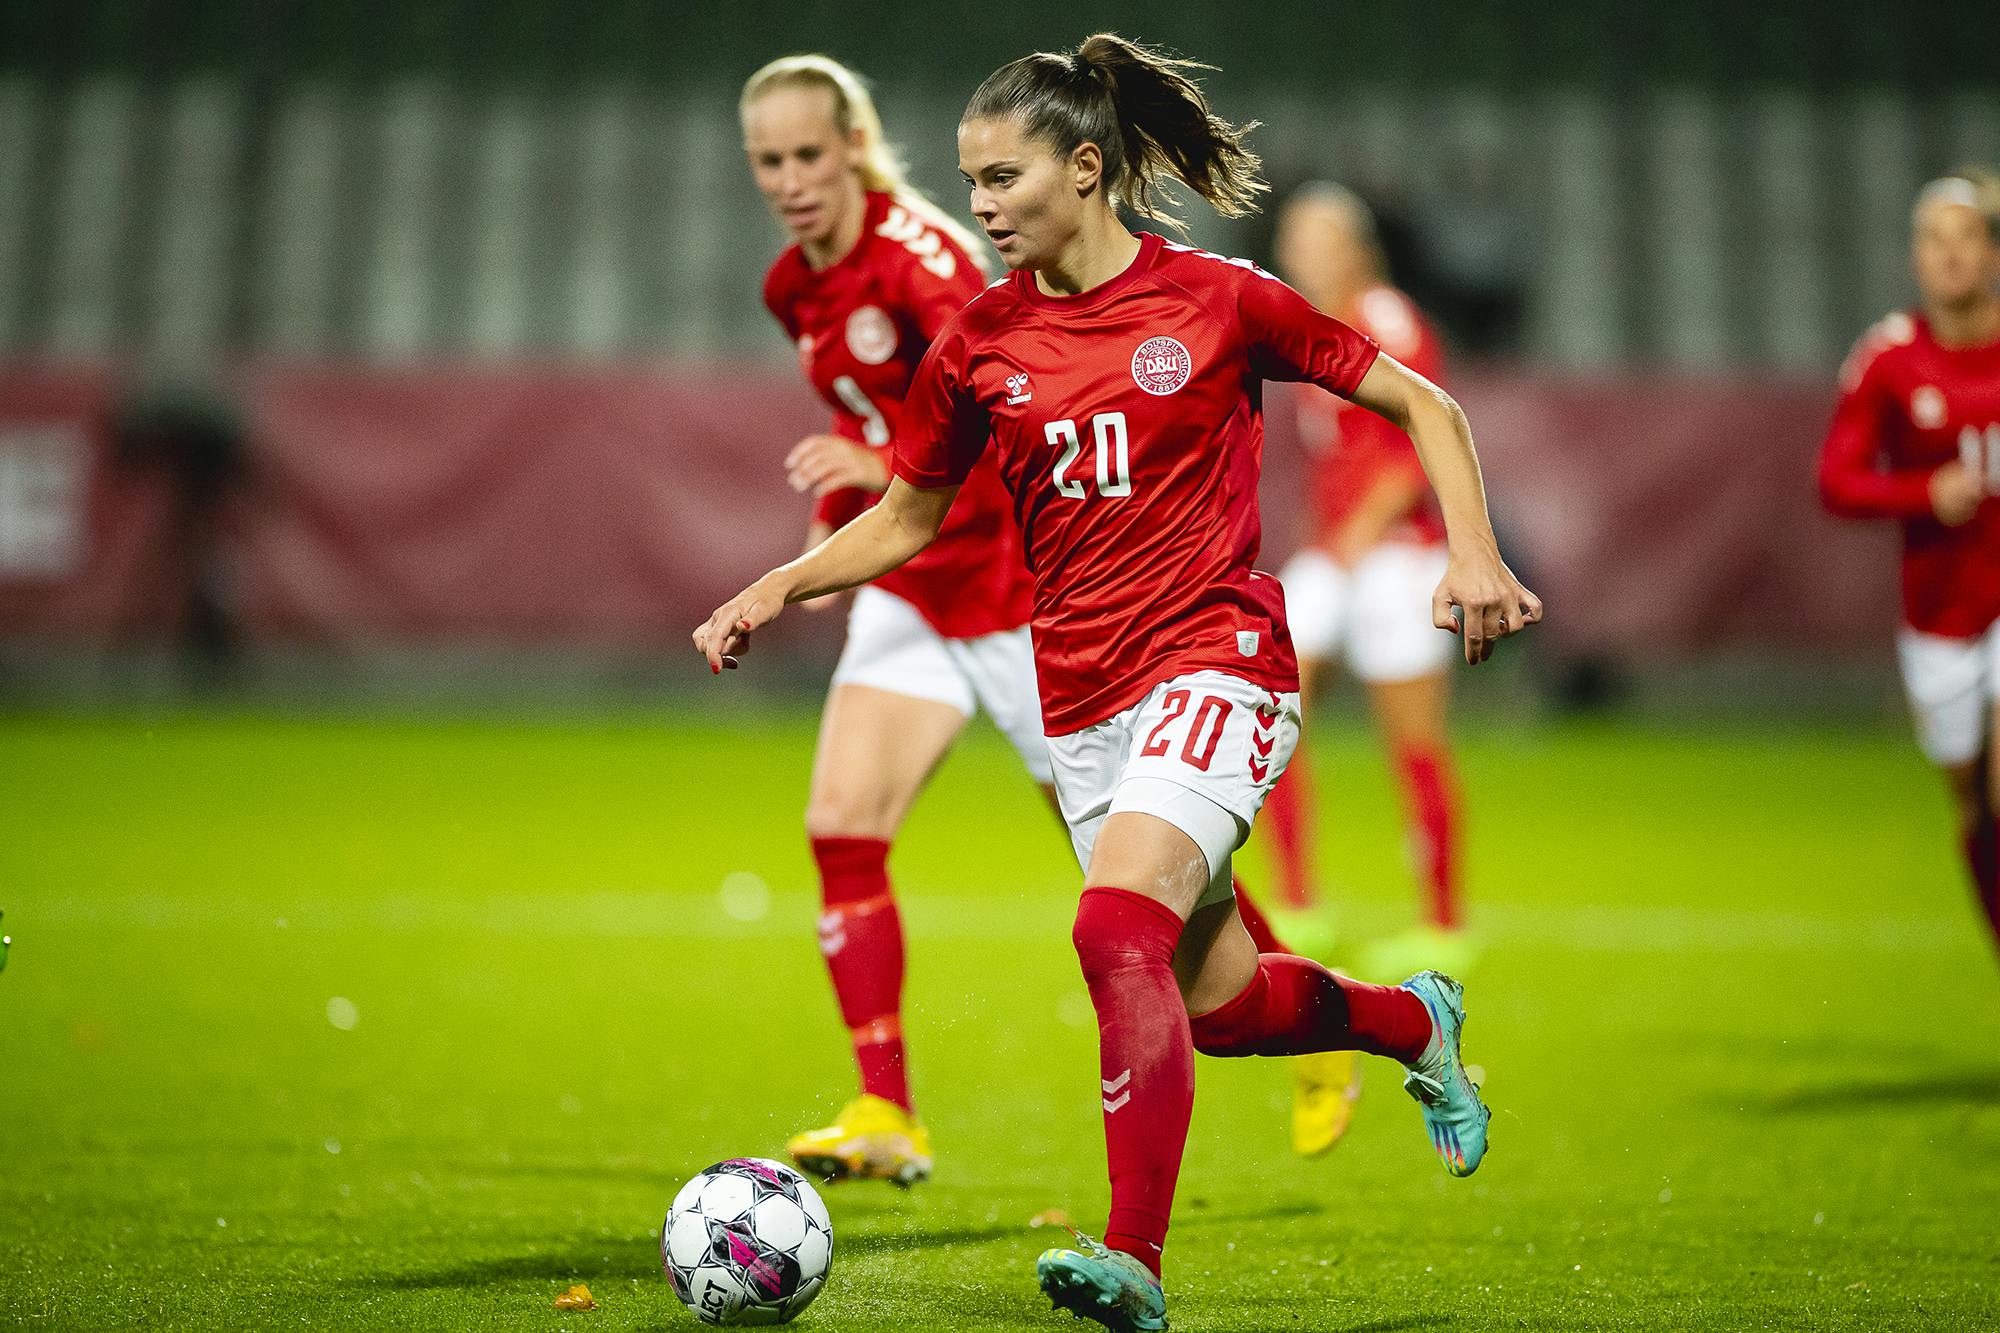 Det danske fodboldkvinder kommer ikke til at spille på hjemmebane.&nbsp;